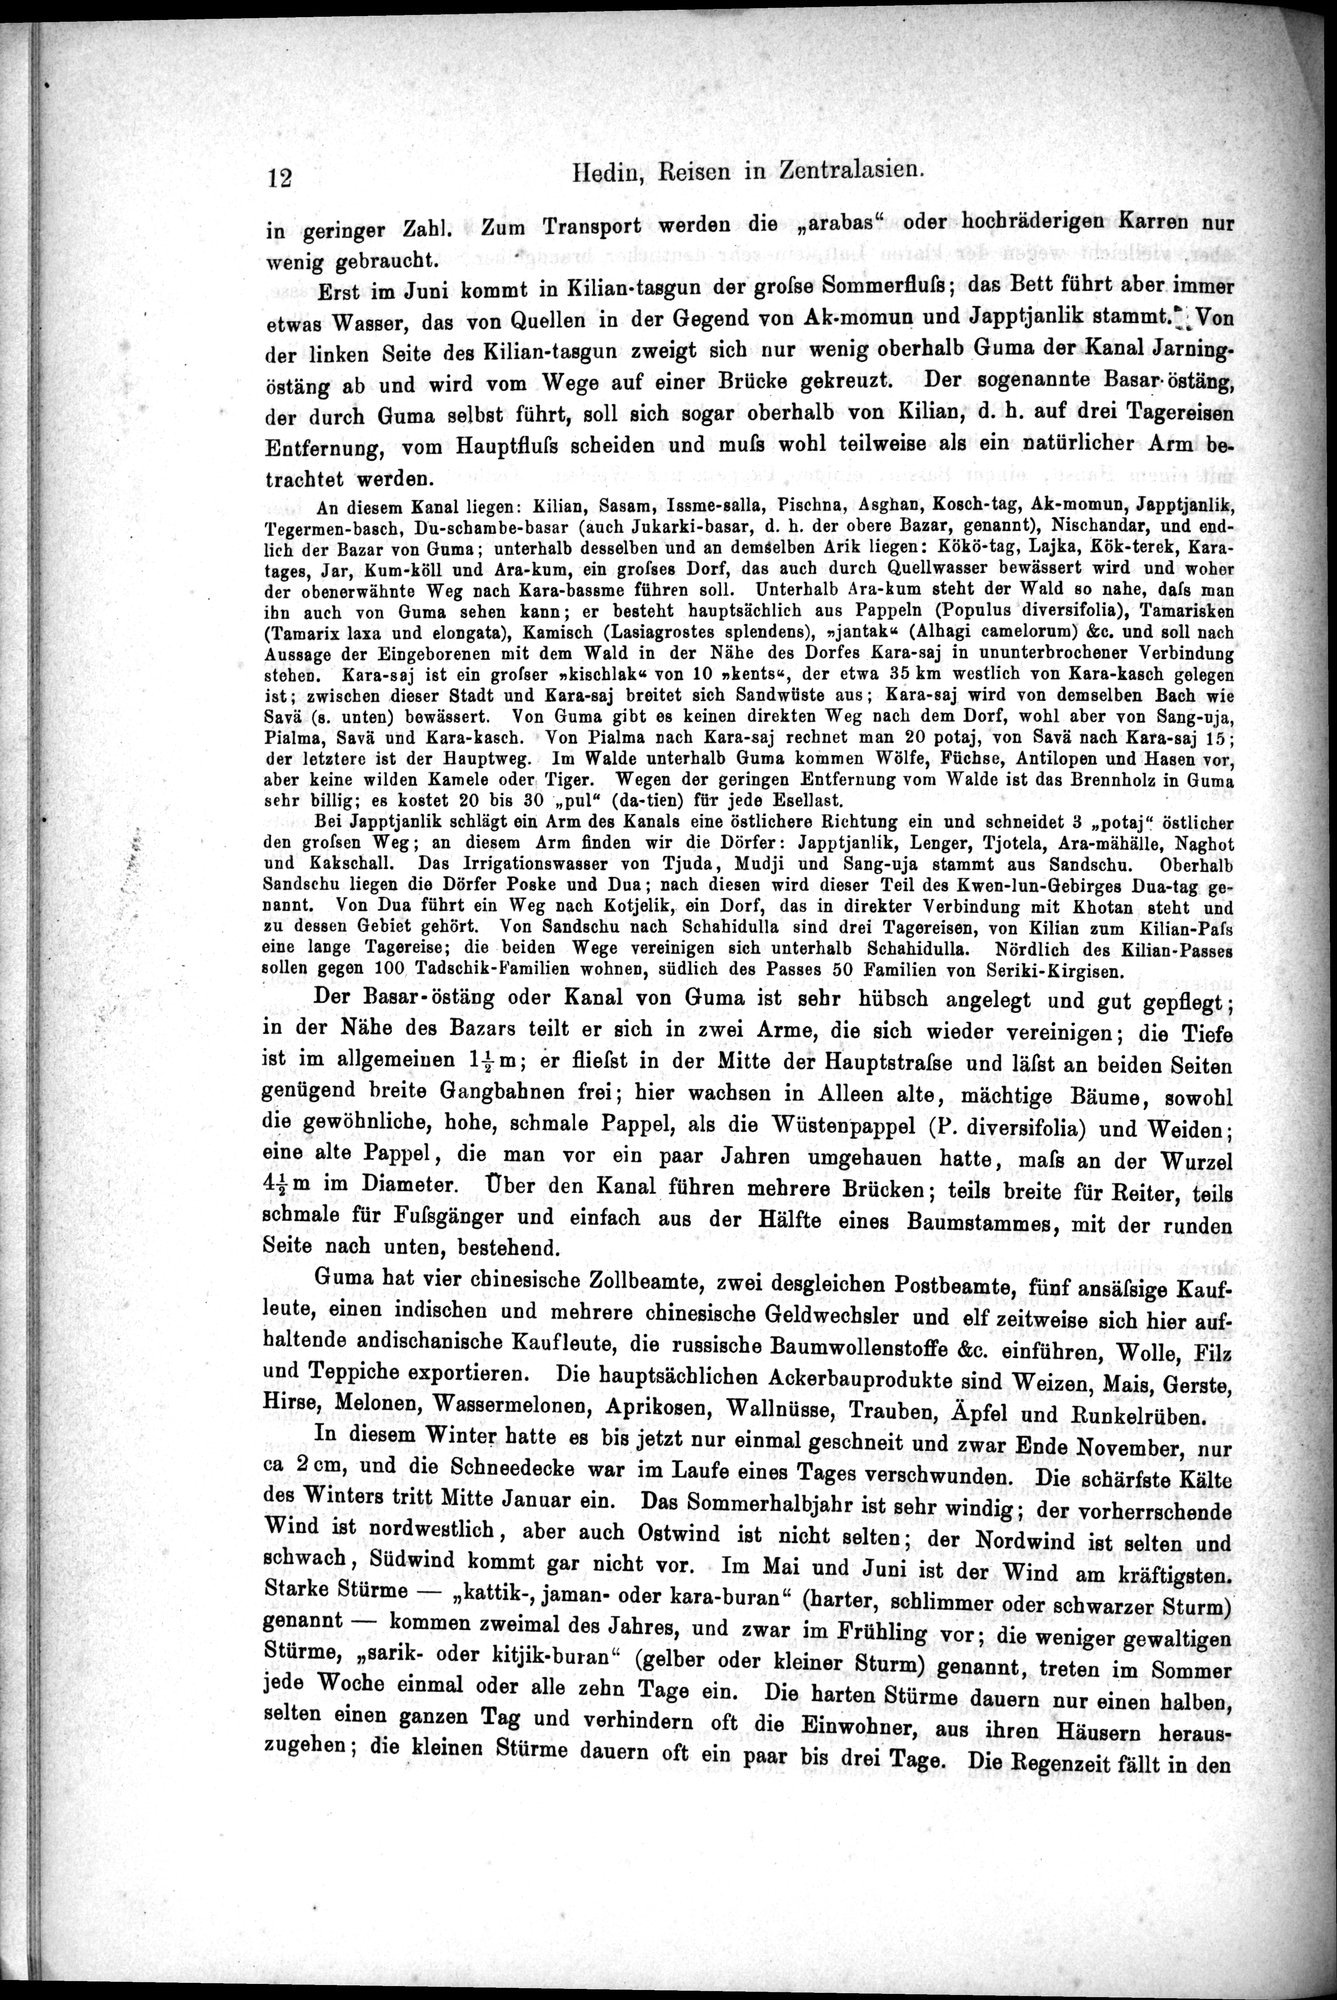 Die Geographische-Wissenschaftlichen Ergebnisse meiner Reisen in Zentralasien, 1894-1897 : vol.1 / Page 24 (Grayscale High Resolution Image)